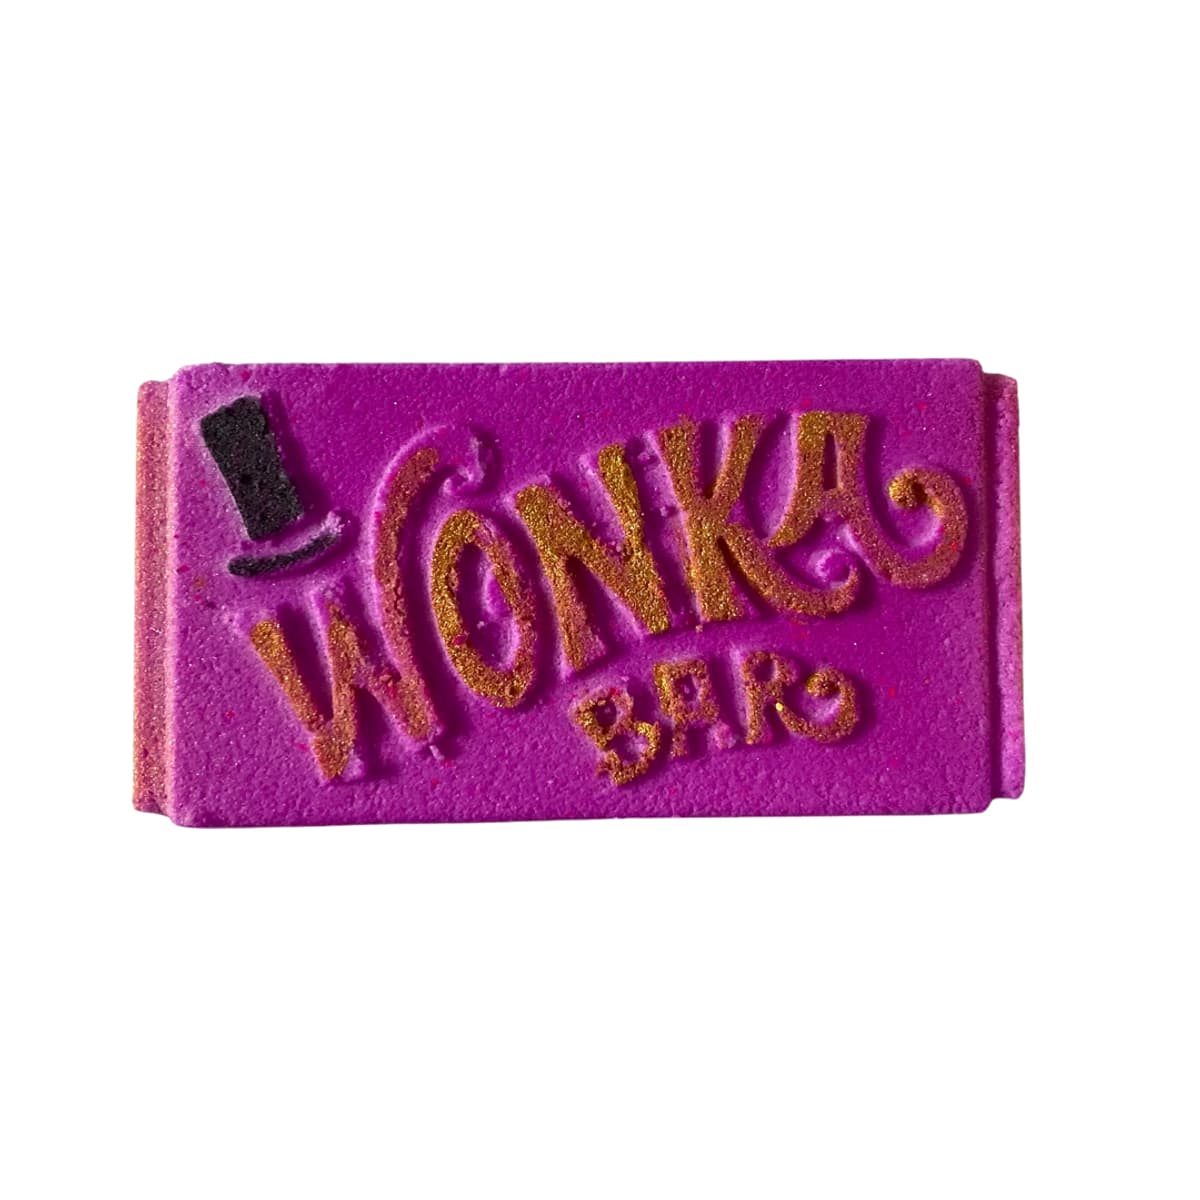 Wonka Bath Bombs